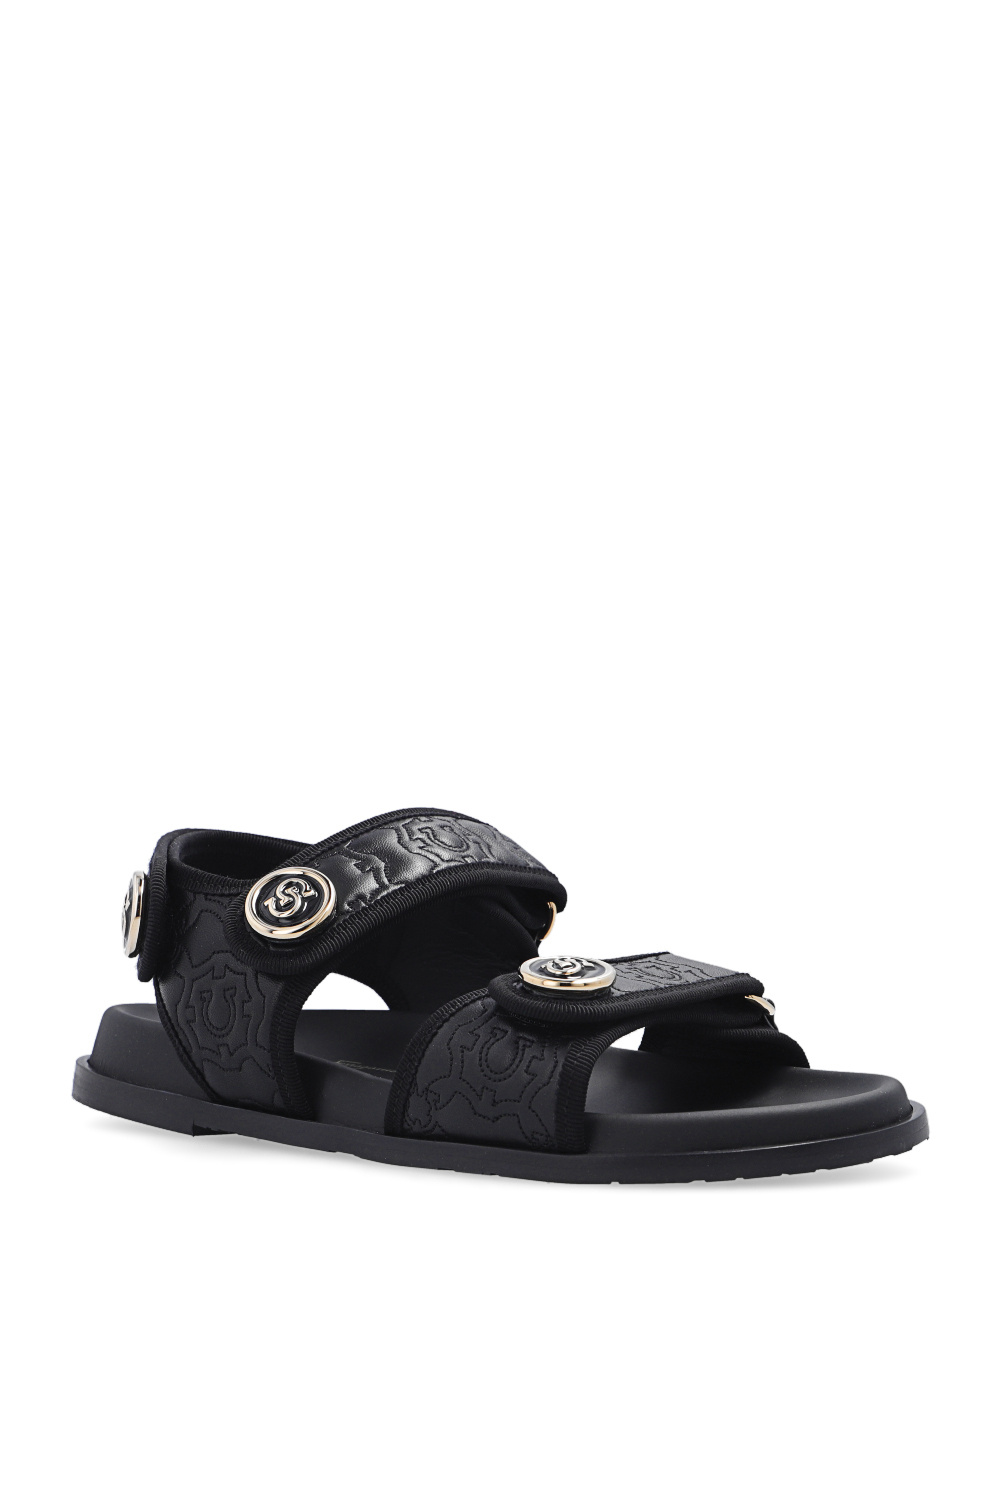 FERRAGAMO Leather sandals